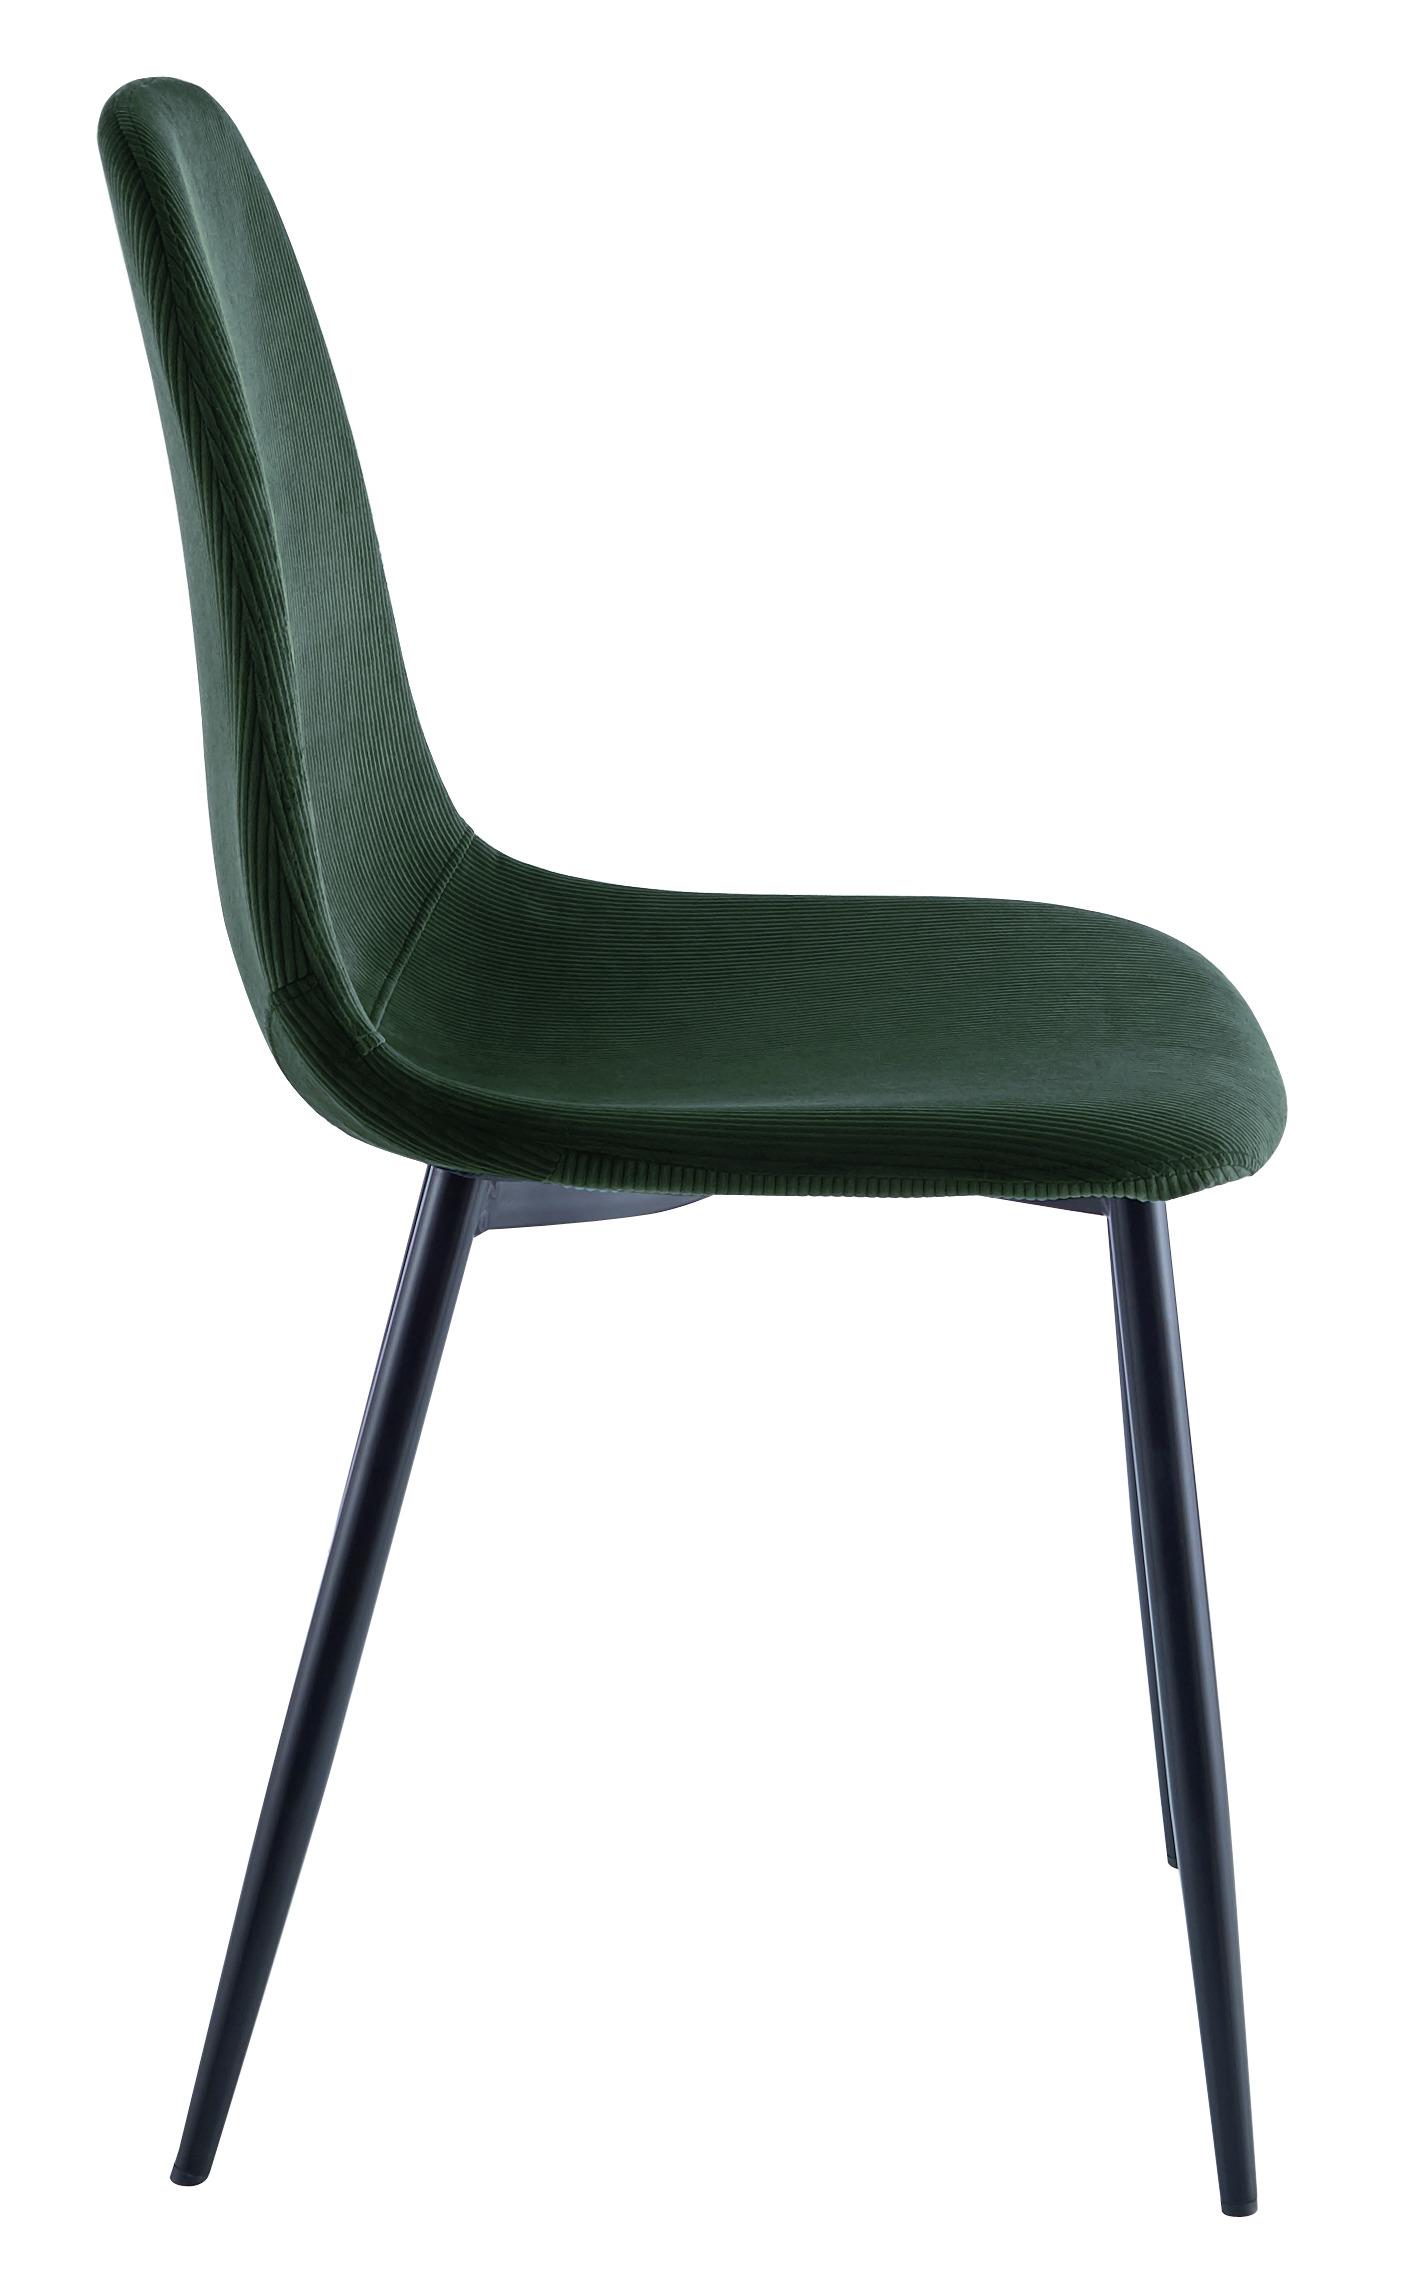 Stuhl aus Kord in Grün/Schwarz - Schwarz/Grün, MODERN, Textil/Metall (44,5/86,5/54cm) - Based